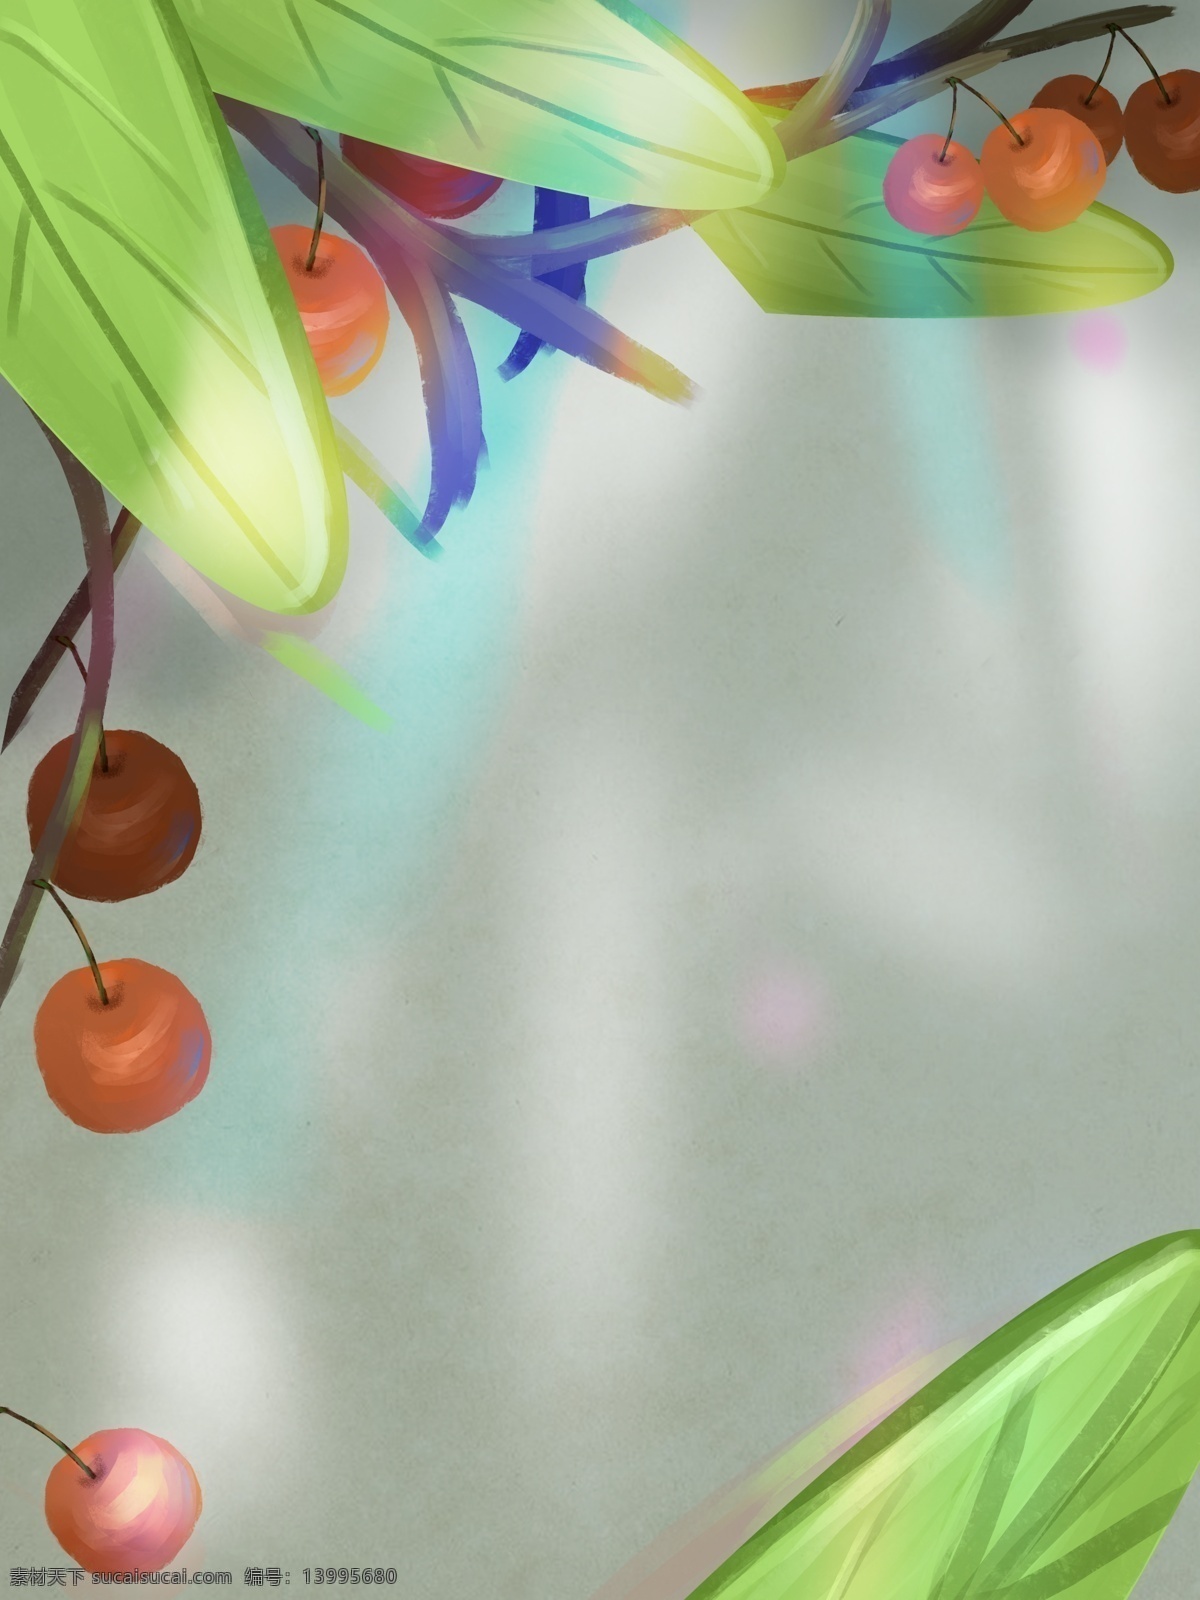 唯美 绿色 水果 食物 背景 食物背景 卡通背景 绿色背景 水果背景 插画背景 樱桃